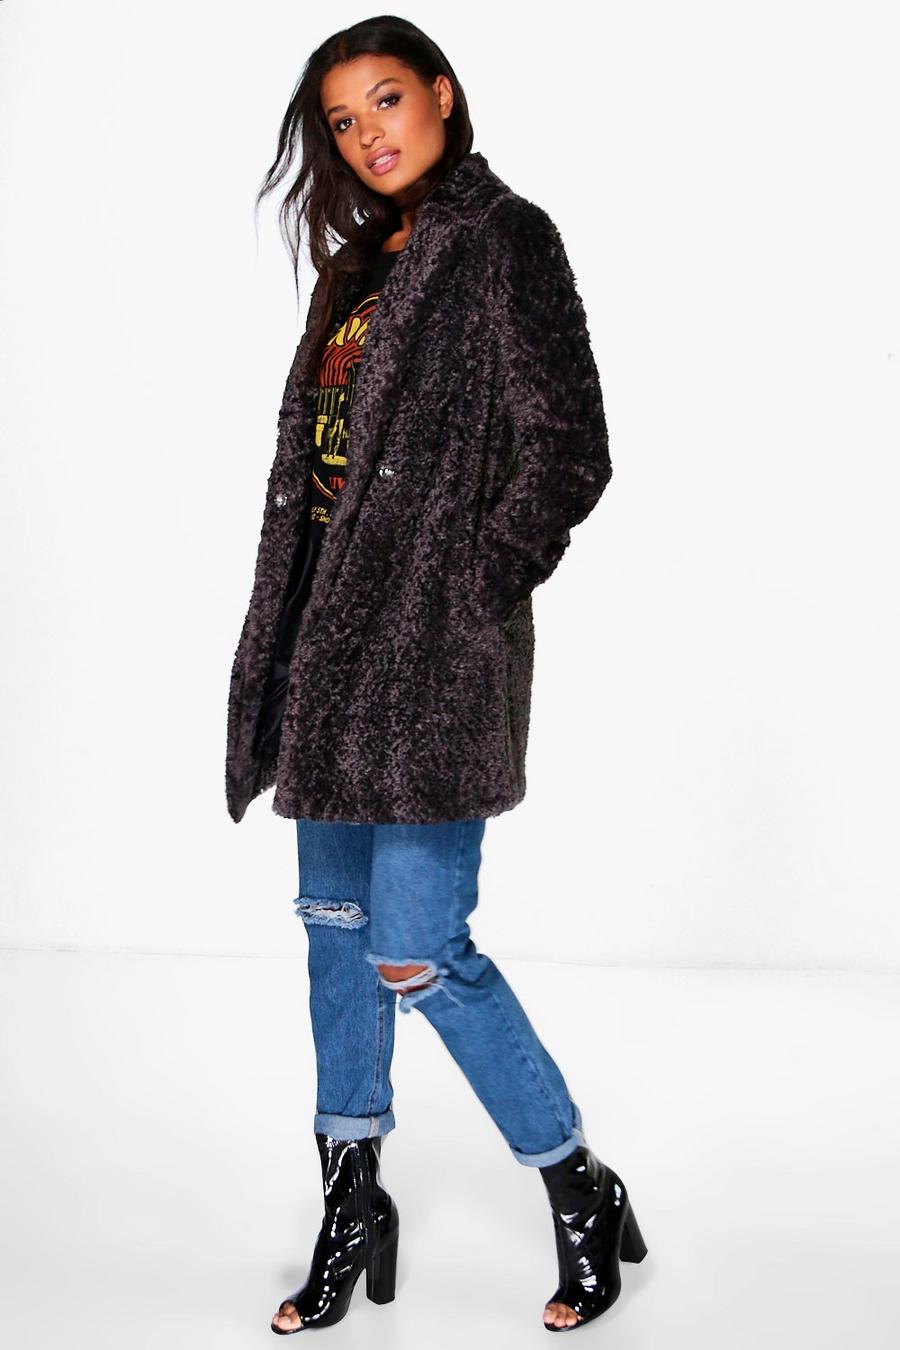 Emilia Boutique testurizzato con cappotto in pelliccia sintetica image number 1